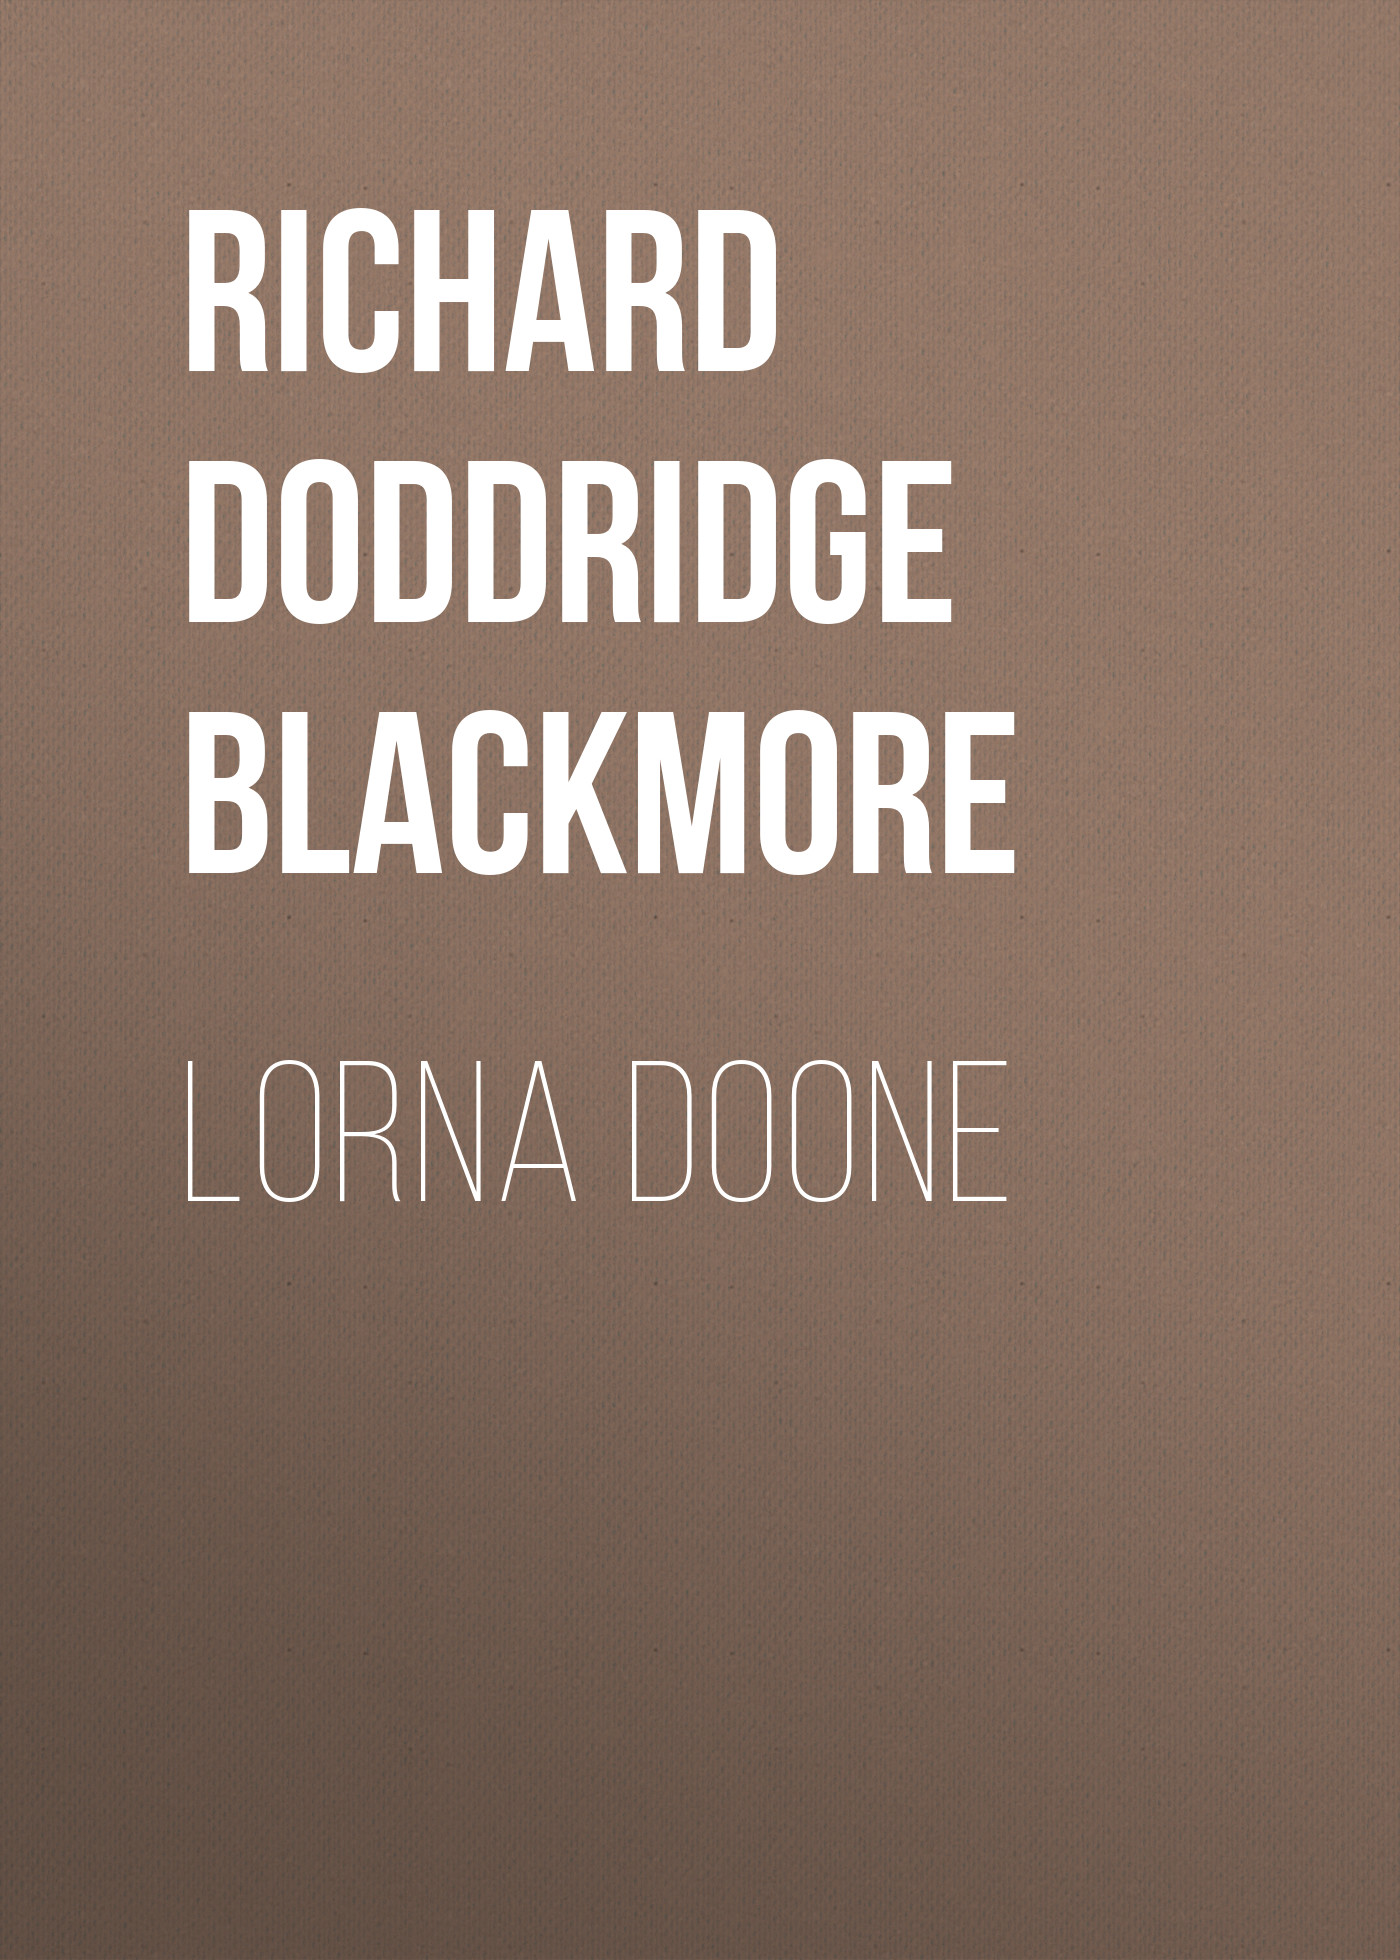 Книга Lorna Doone из серии , созданная Richard Doddridge Blackmore, может относится к жанру Историческая фантастика, Зарубежная старинная литература, Зарубежная классика, Исторические приключения. Стоимость электронной книги Lorna Doone с идентификатором 36095541 составляет 0 руб.